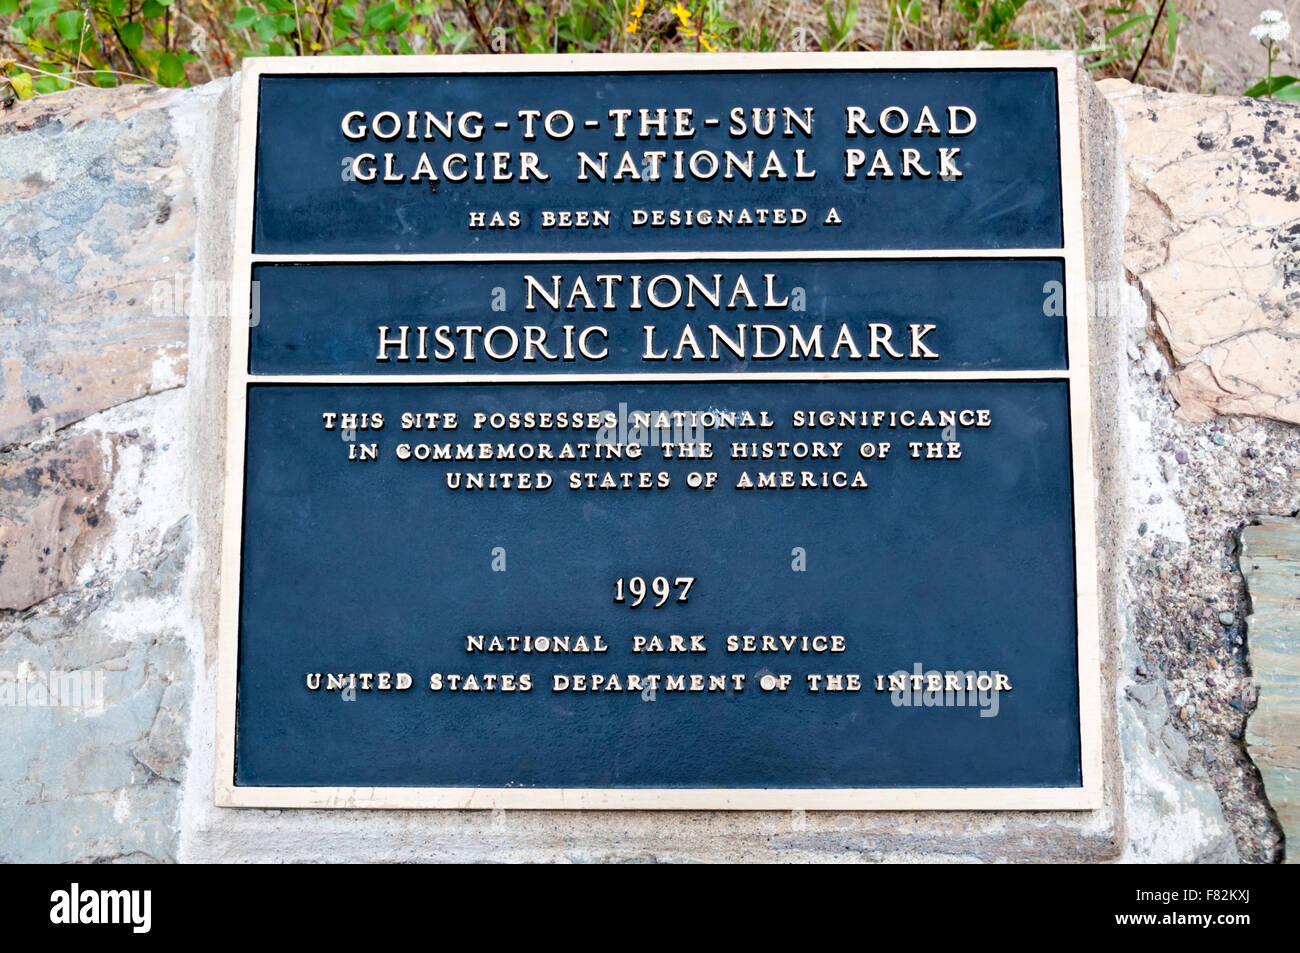 Une plaque l'enregistrement de la désignation de l'Going-To-The-Sun Road, dans le parc national des Glaciers comme un National Historic Landmark. Banque D'Images